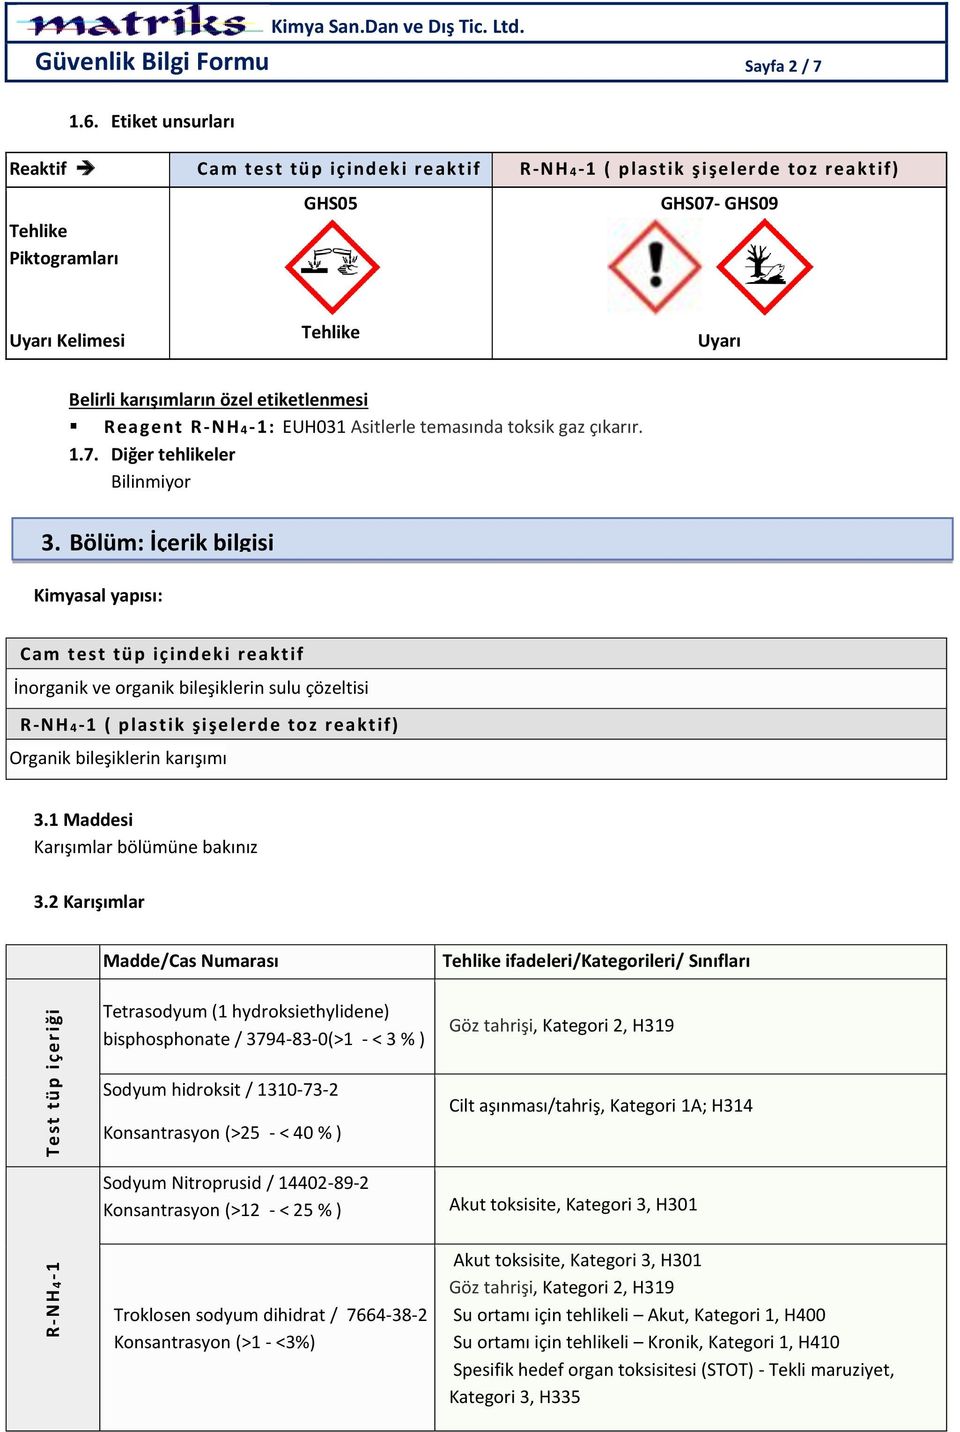 etiketlenmesi Reagent R -NH4-1: EUH031 Asitlerle temasında toksik gaz çıkarır. 1.7. Diğer tehlikeler Bilinmiyor 3.